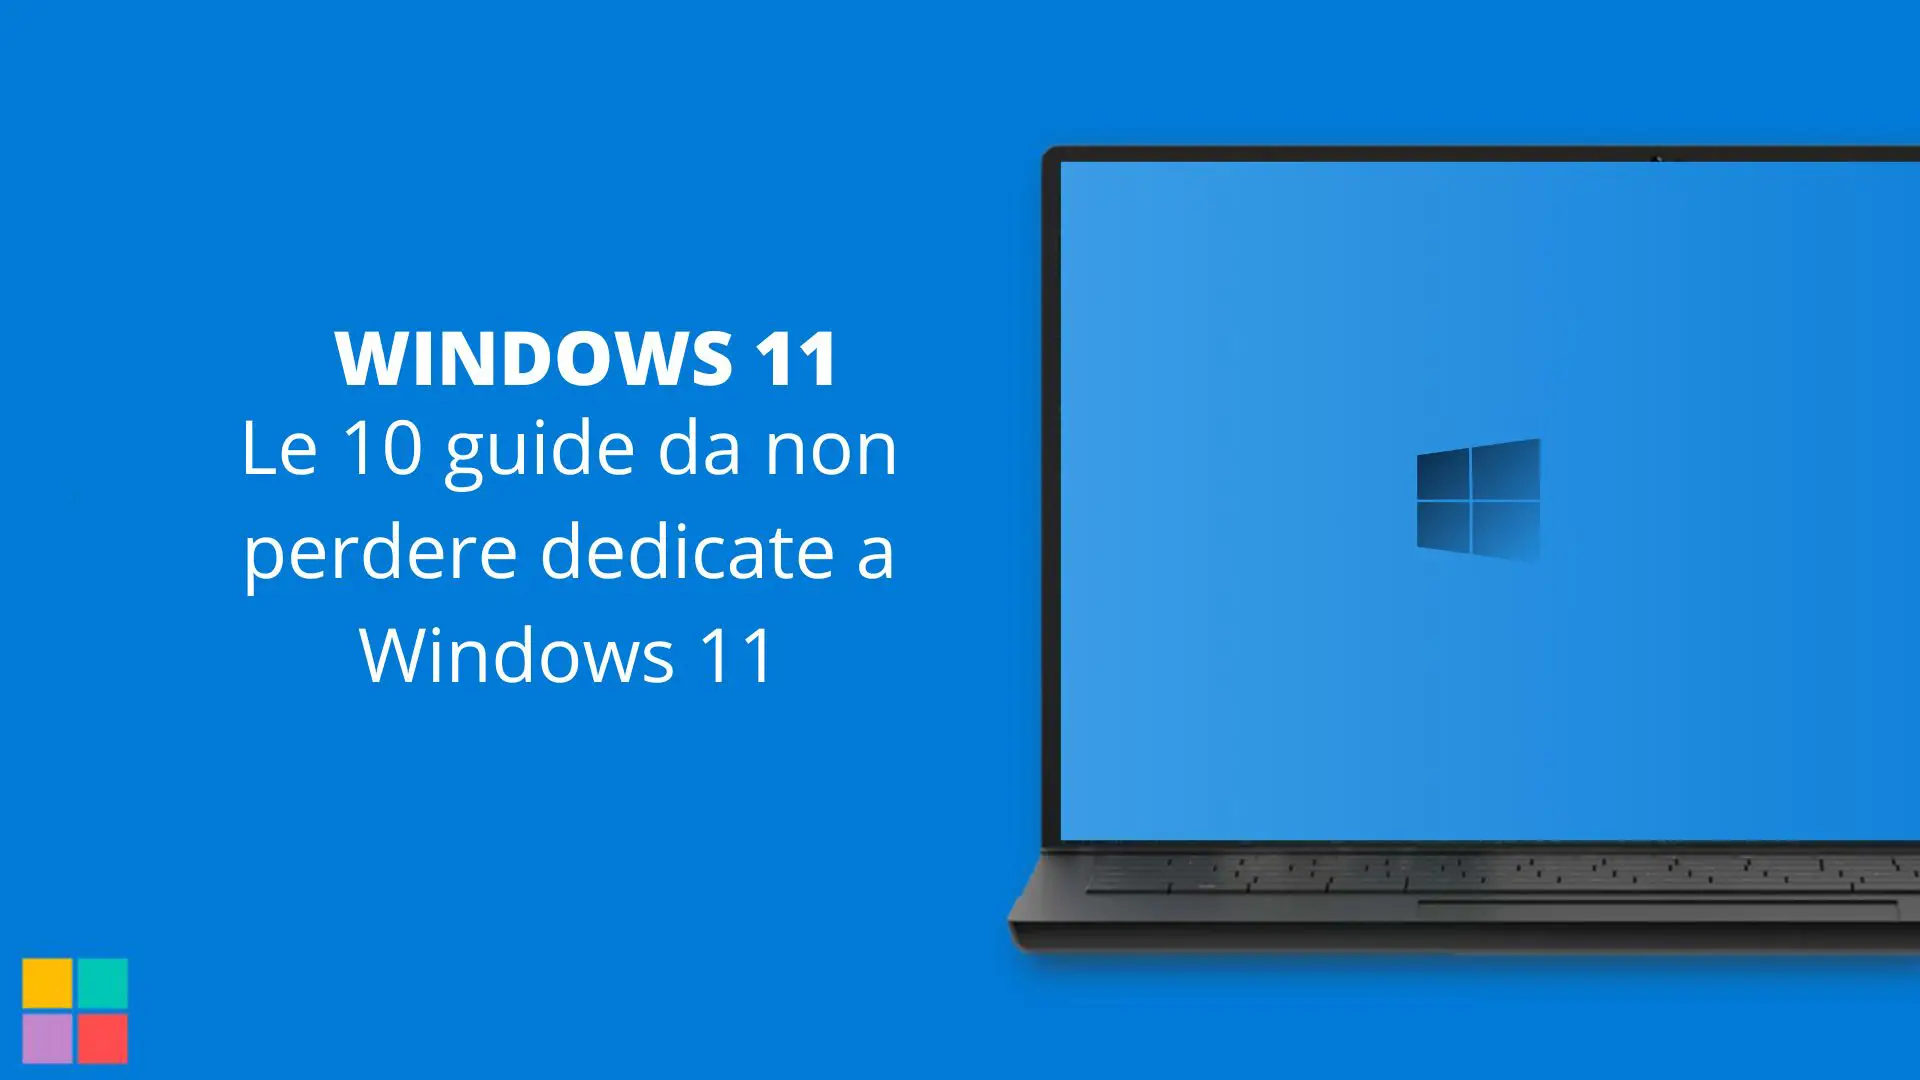 Le 10 guide da non perdere dedicate a Windows 11